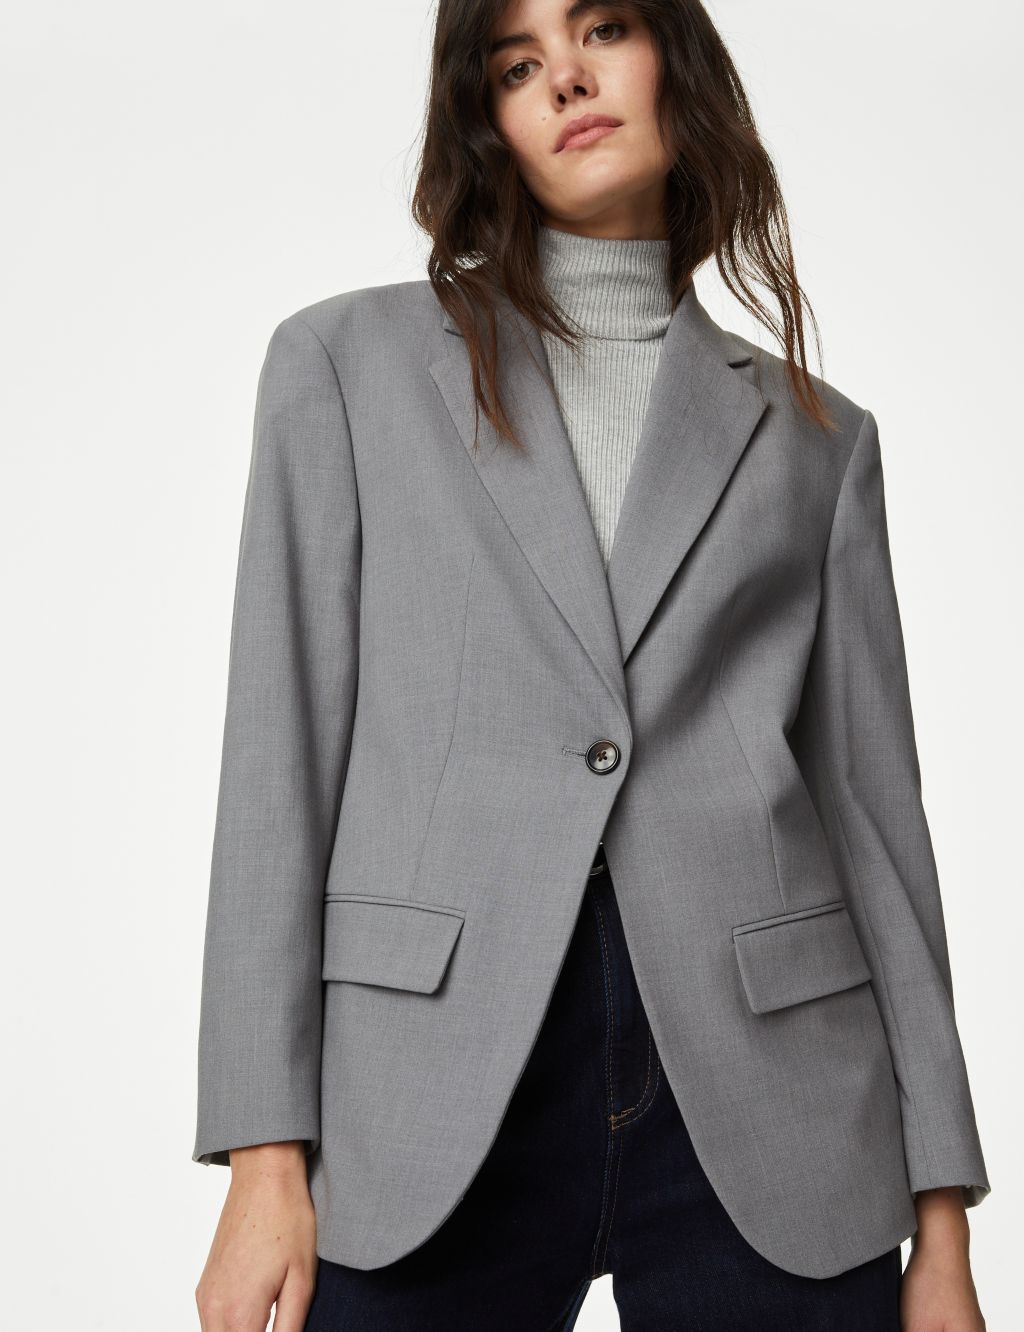 Women's Jackets in Gray